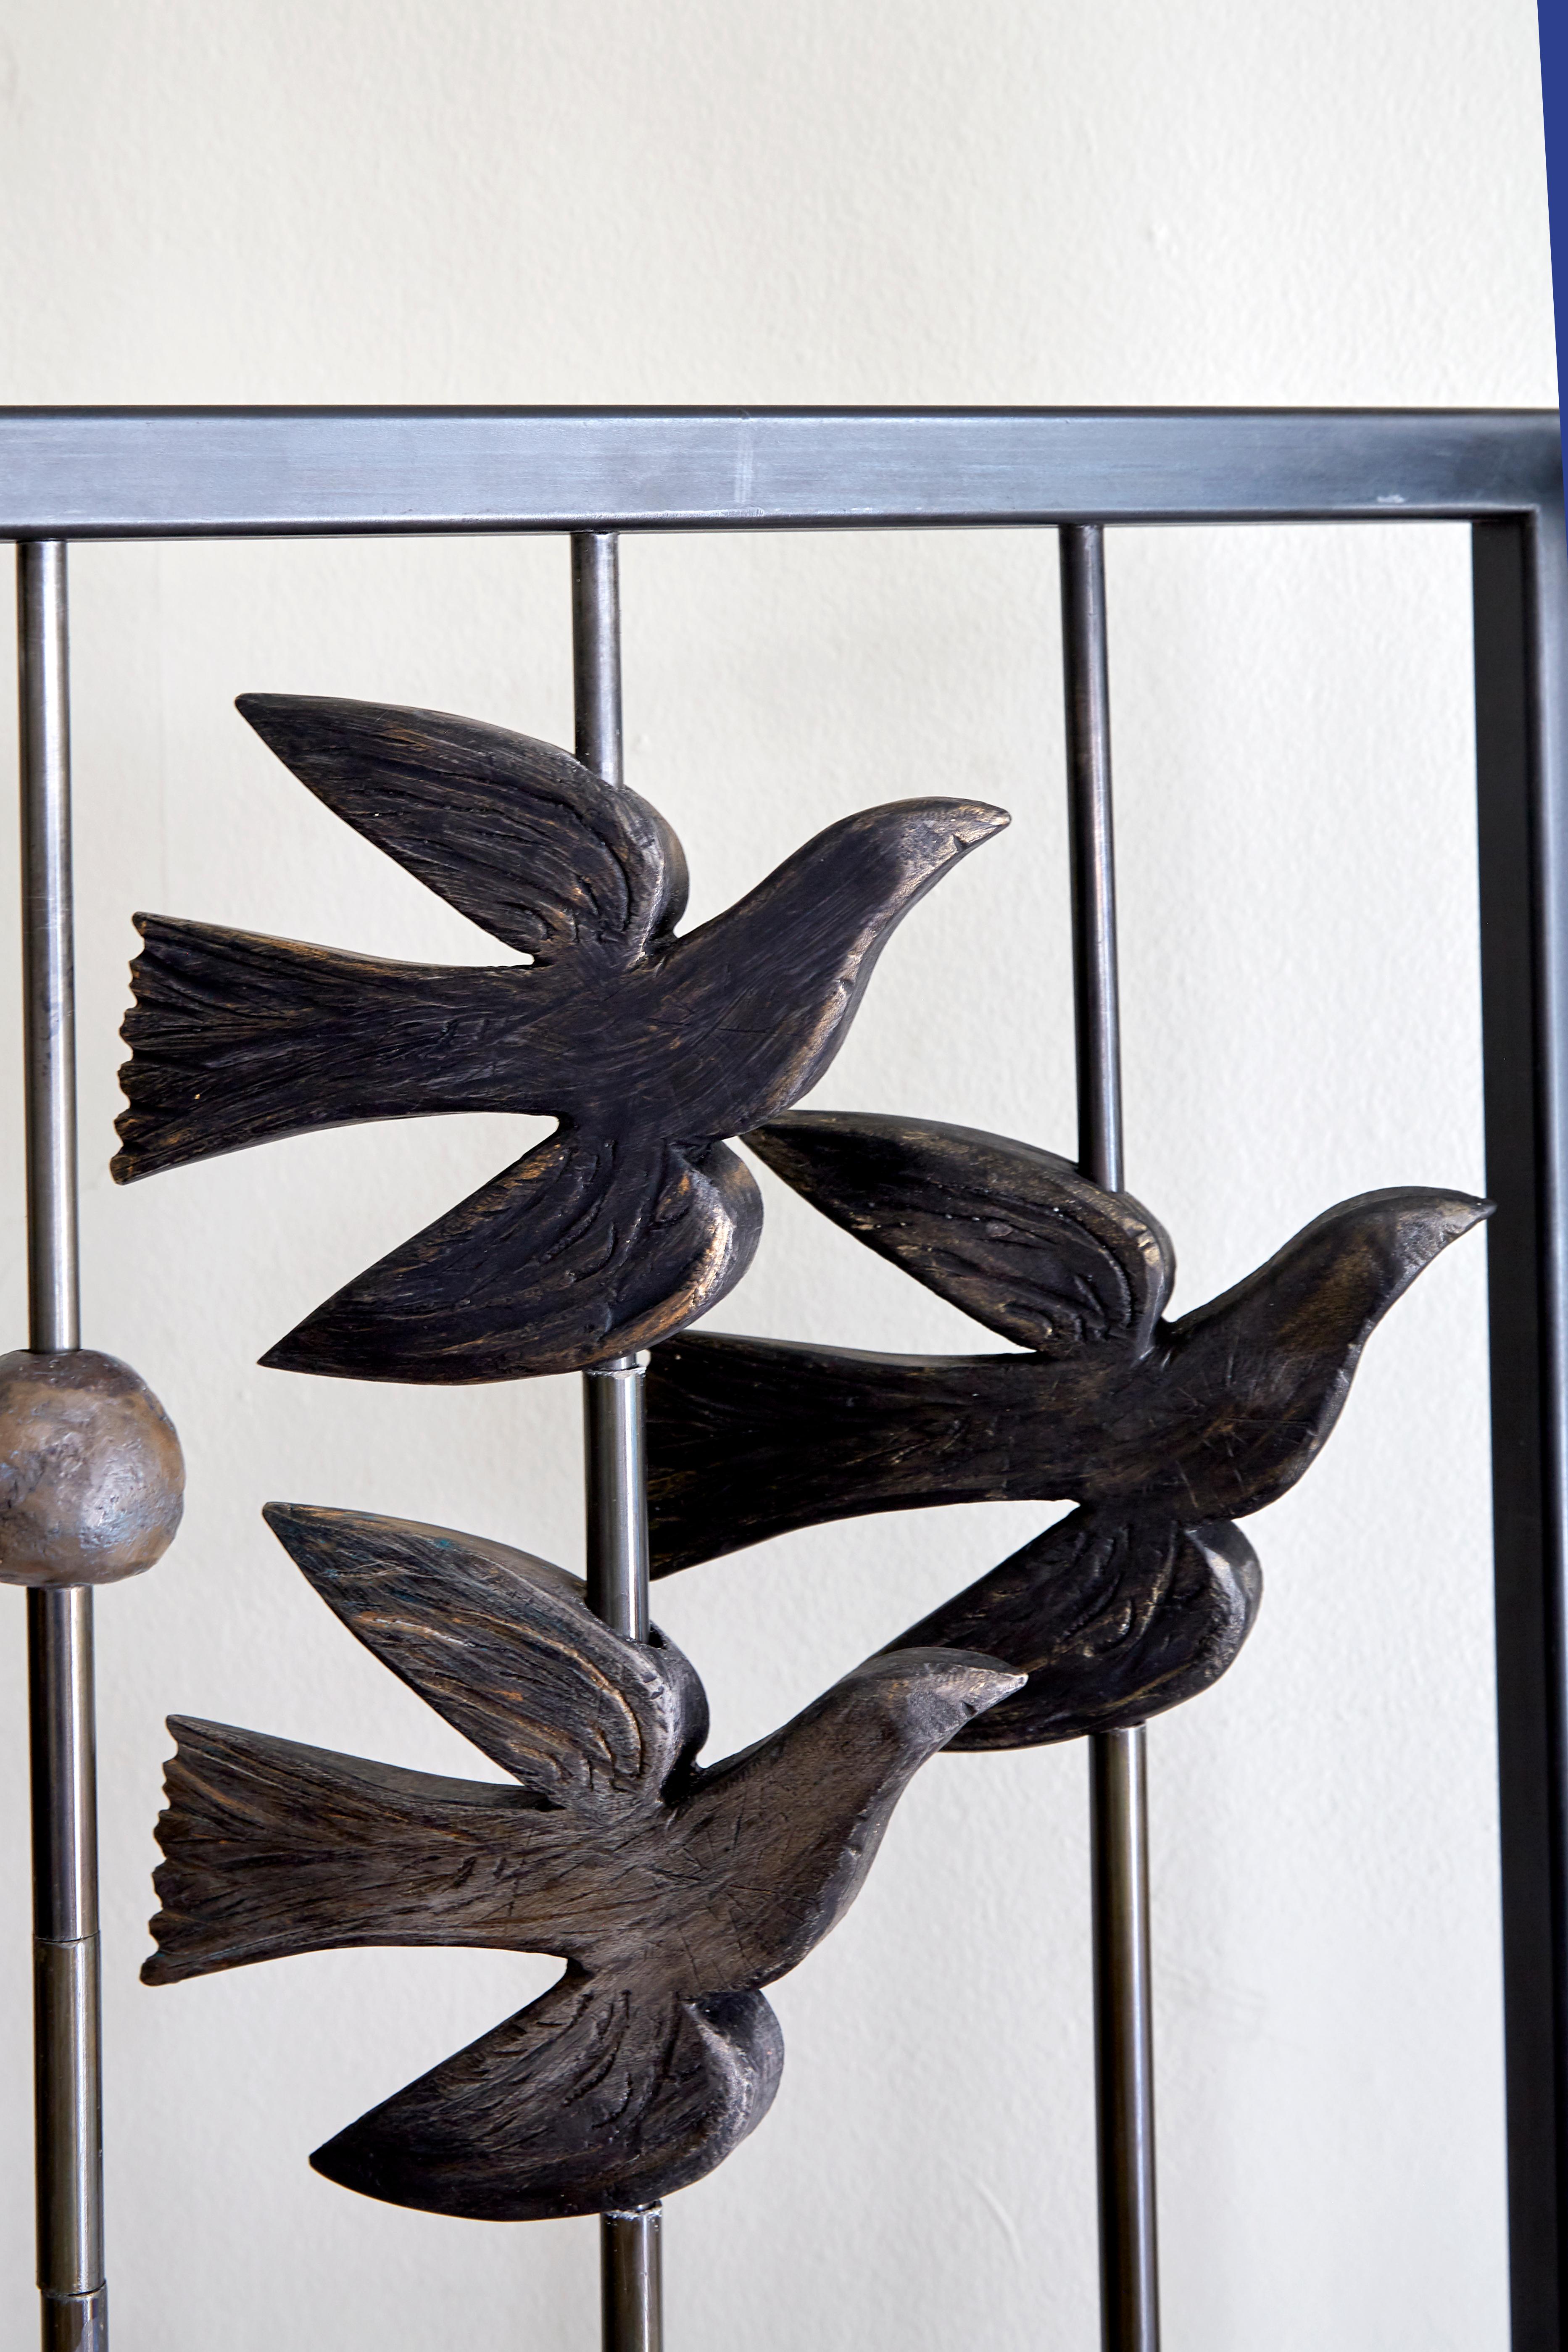 Le triptyque de Margit Wittig, écran en métal noirci et séparateur de pièce, présente des oiseaux sculptés en résine en vol. Ces pièces peuvent pivoter, ce qui permet au collectionneur de créer différents niveaux d'opacité et d'apparence du